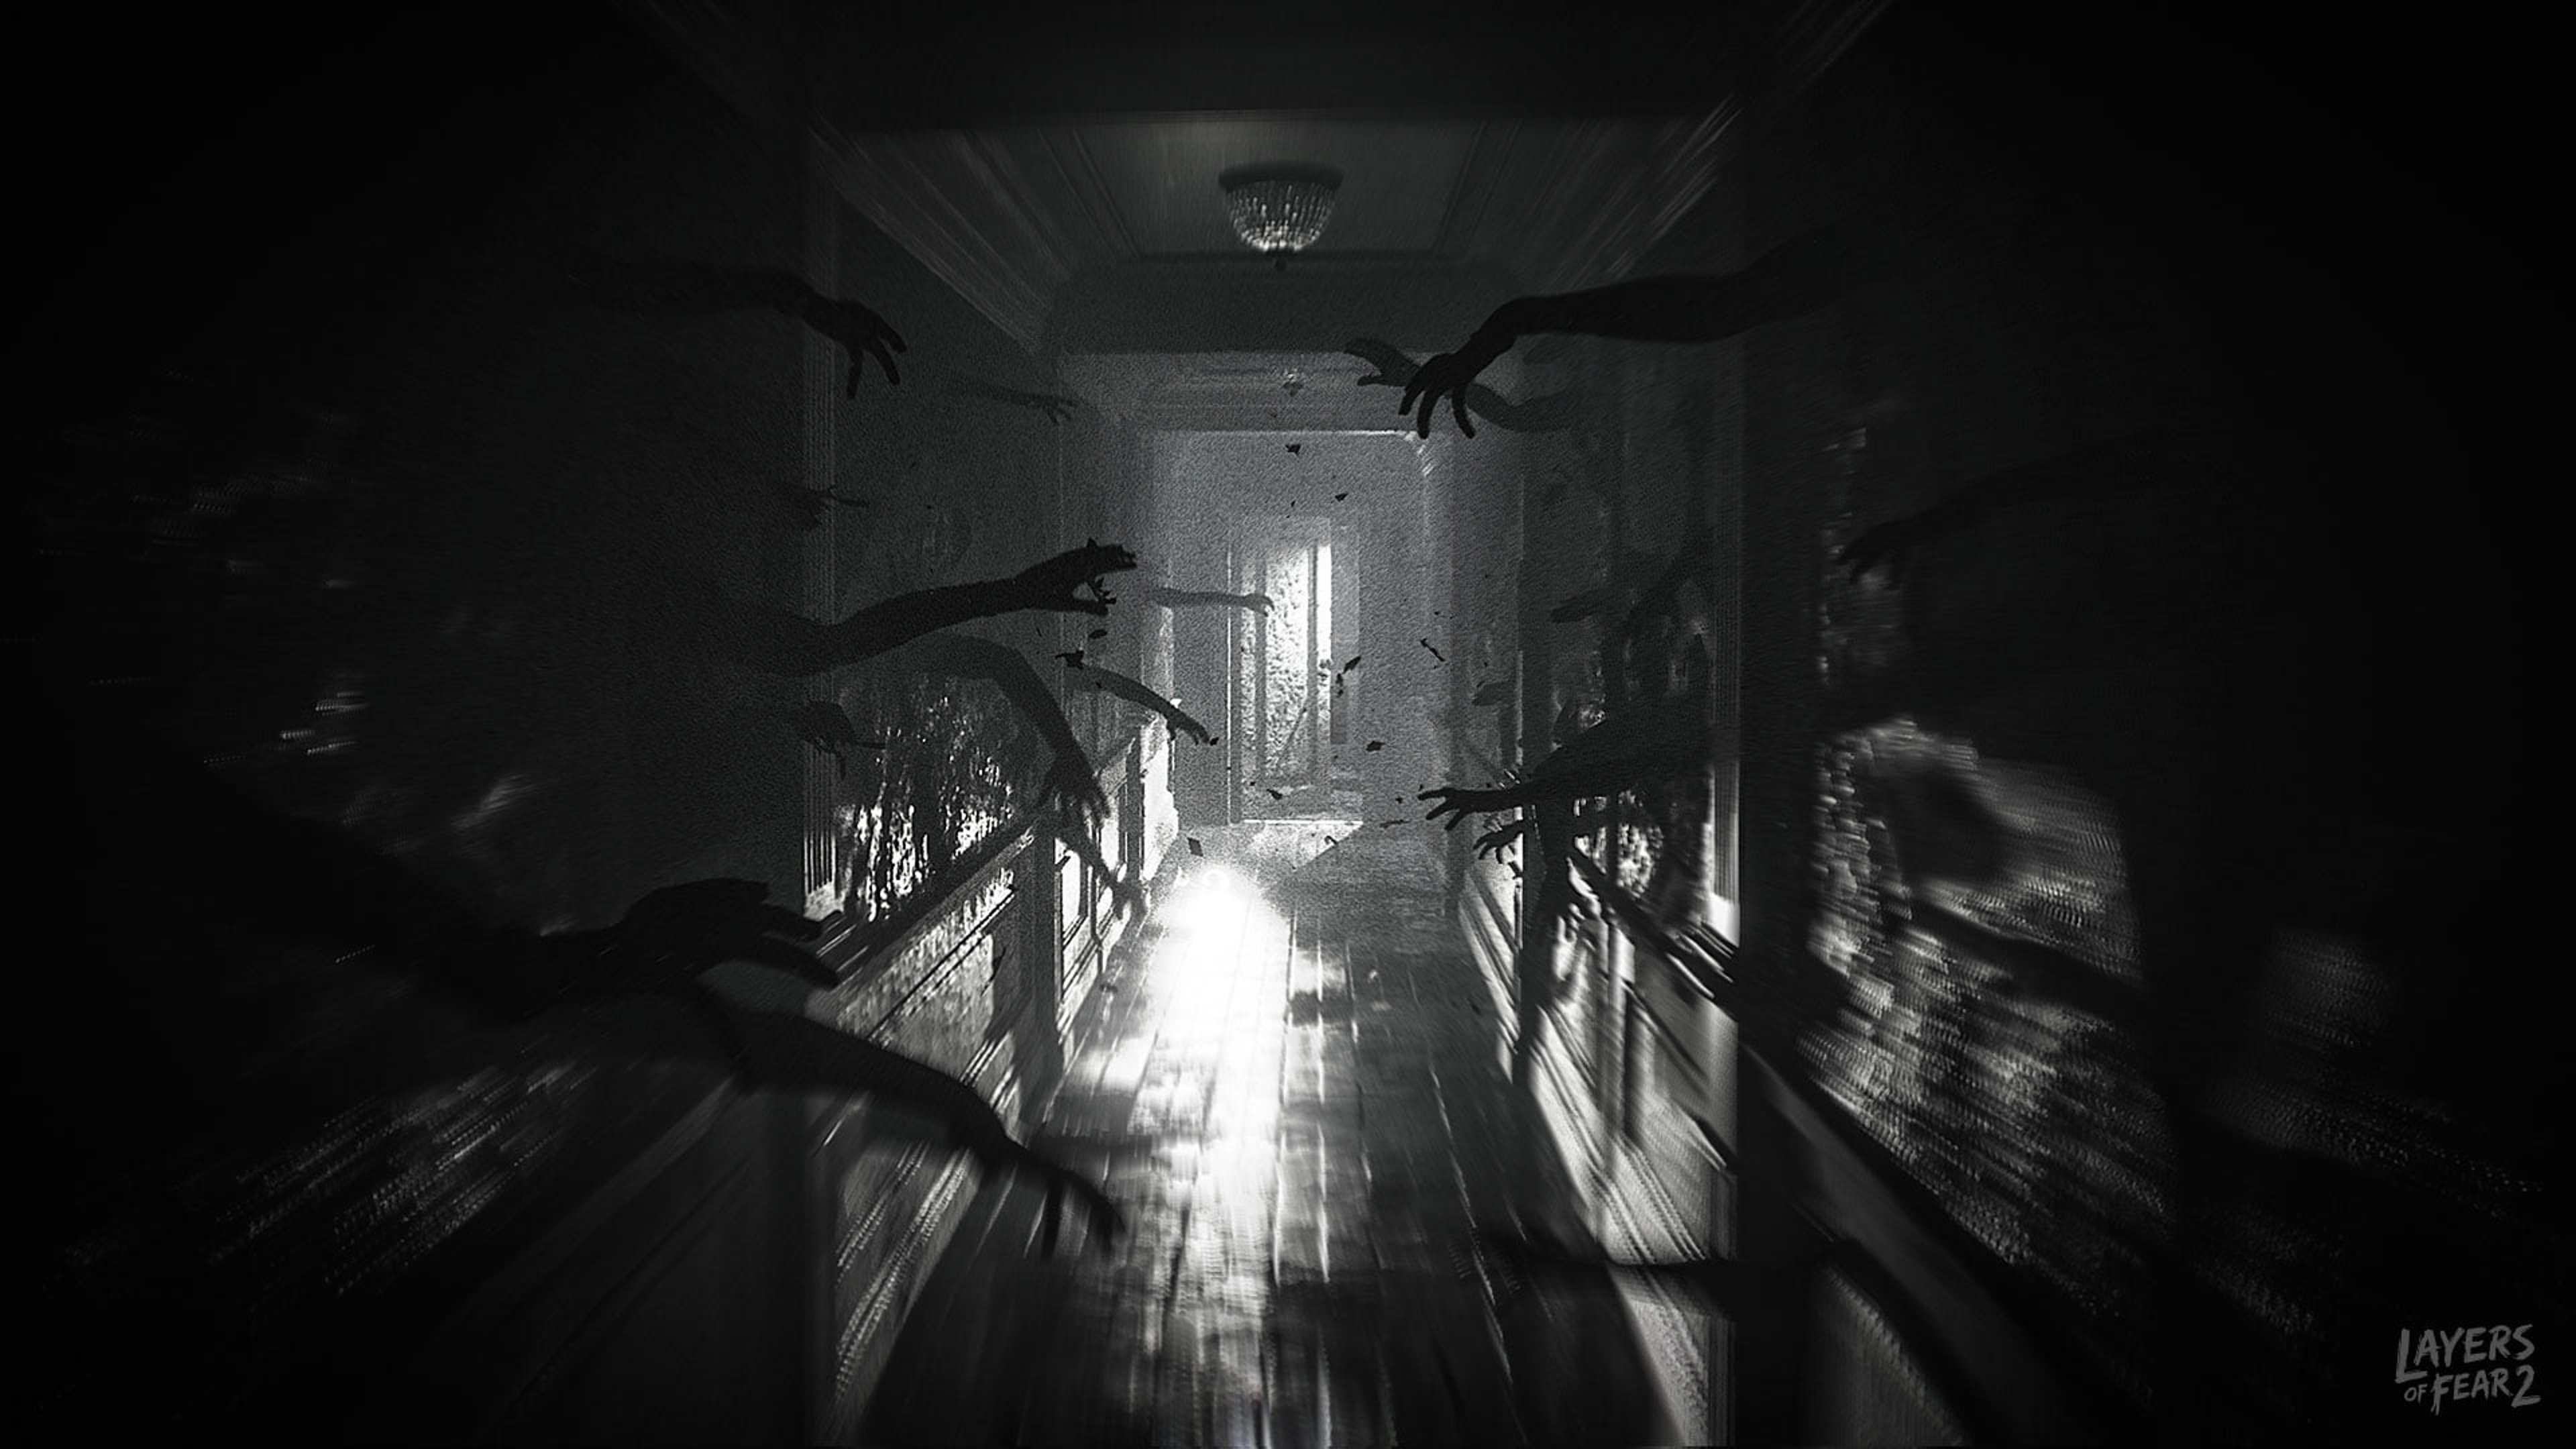 Layers of Fear 2: rilasciato un nuovo inquietante trailer